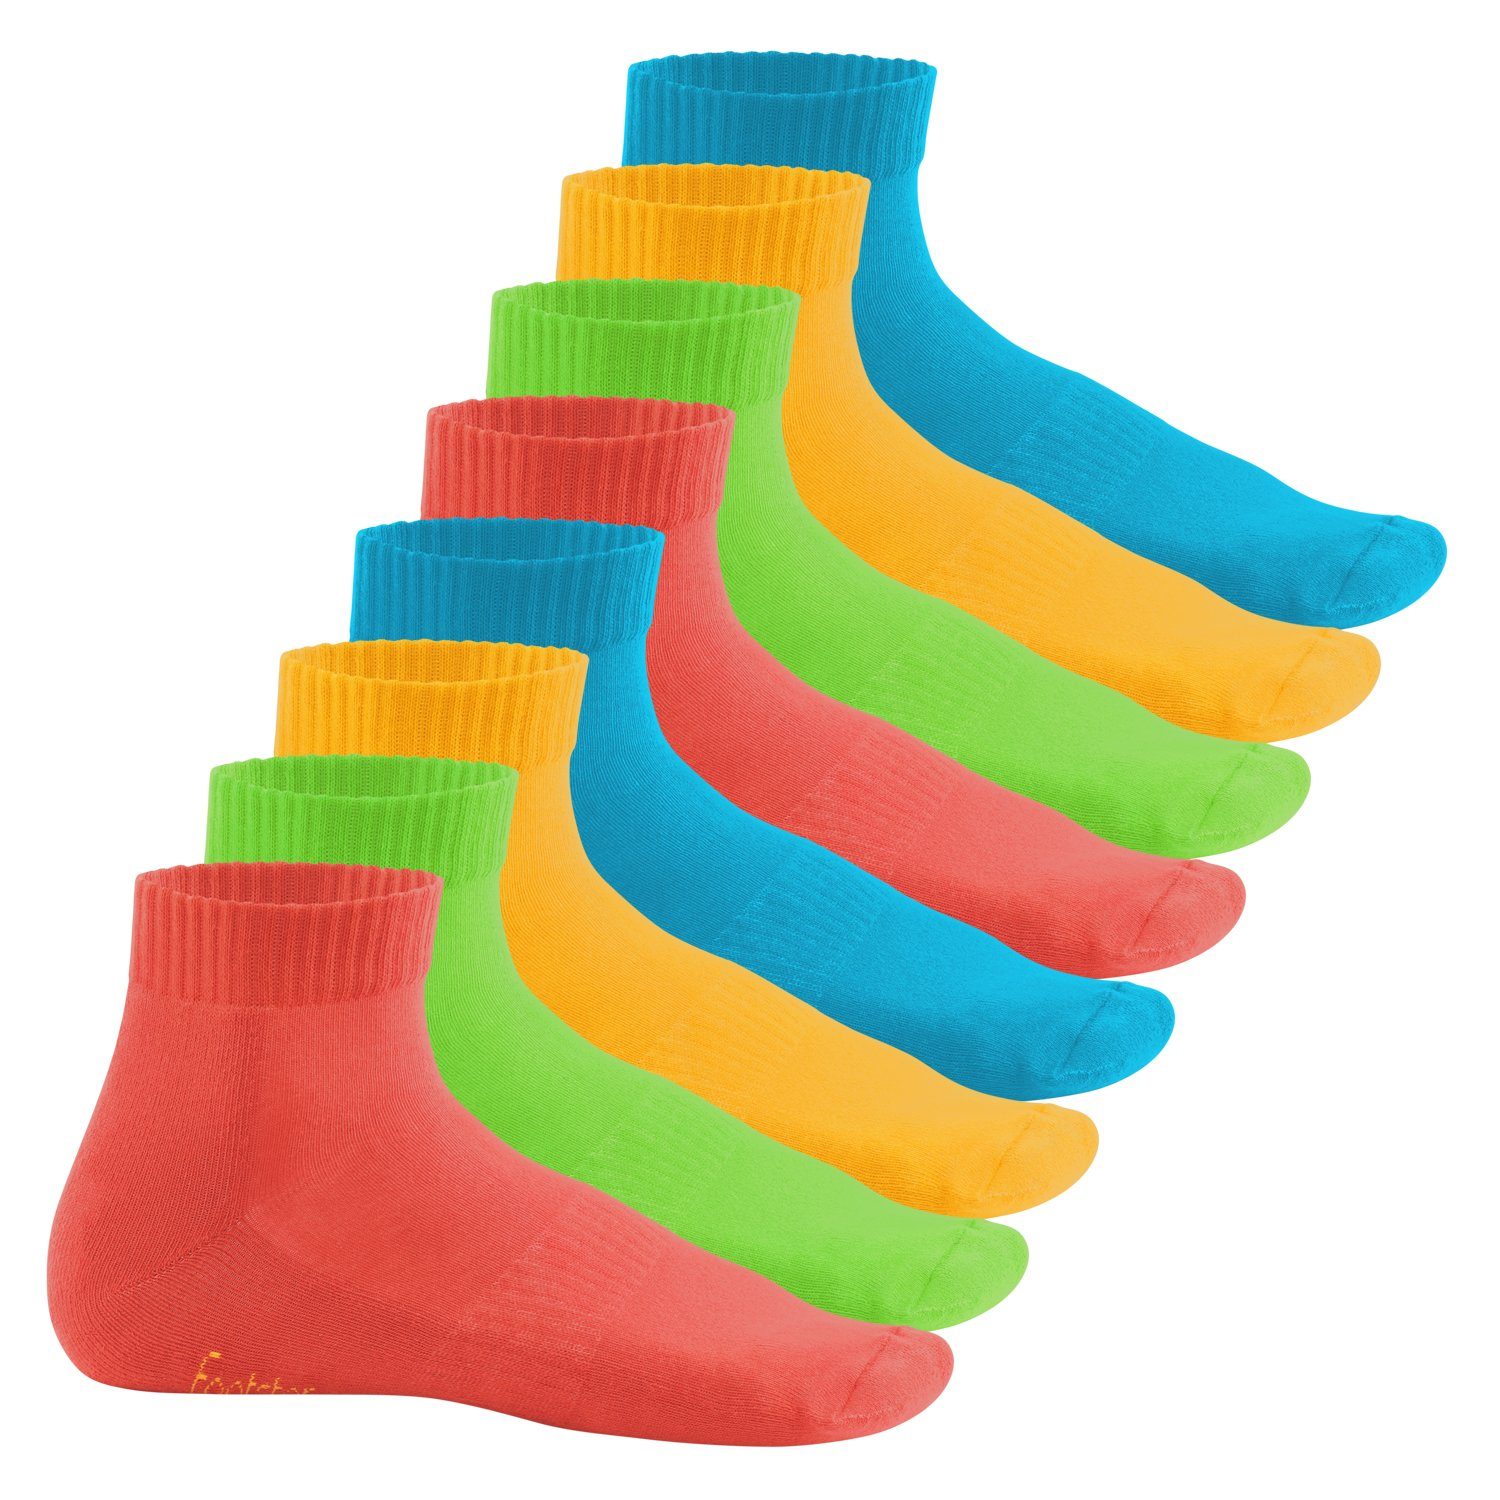 & Kurzschaft Trendfarben Damen Frottee-Sohle Paar) (8 Herren Footstar Kurzsocken Socken,